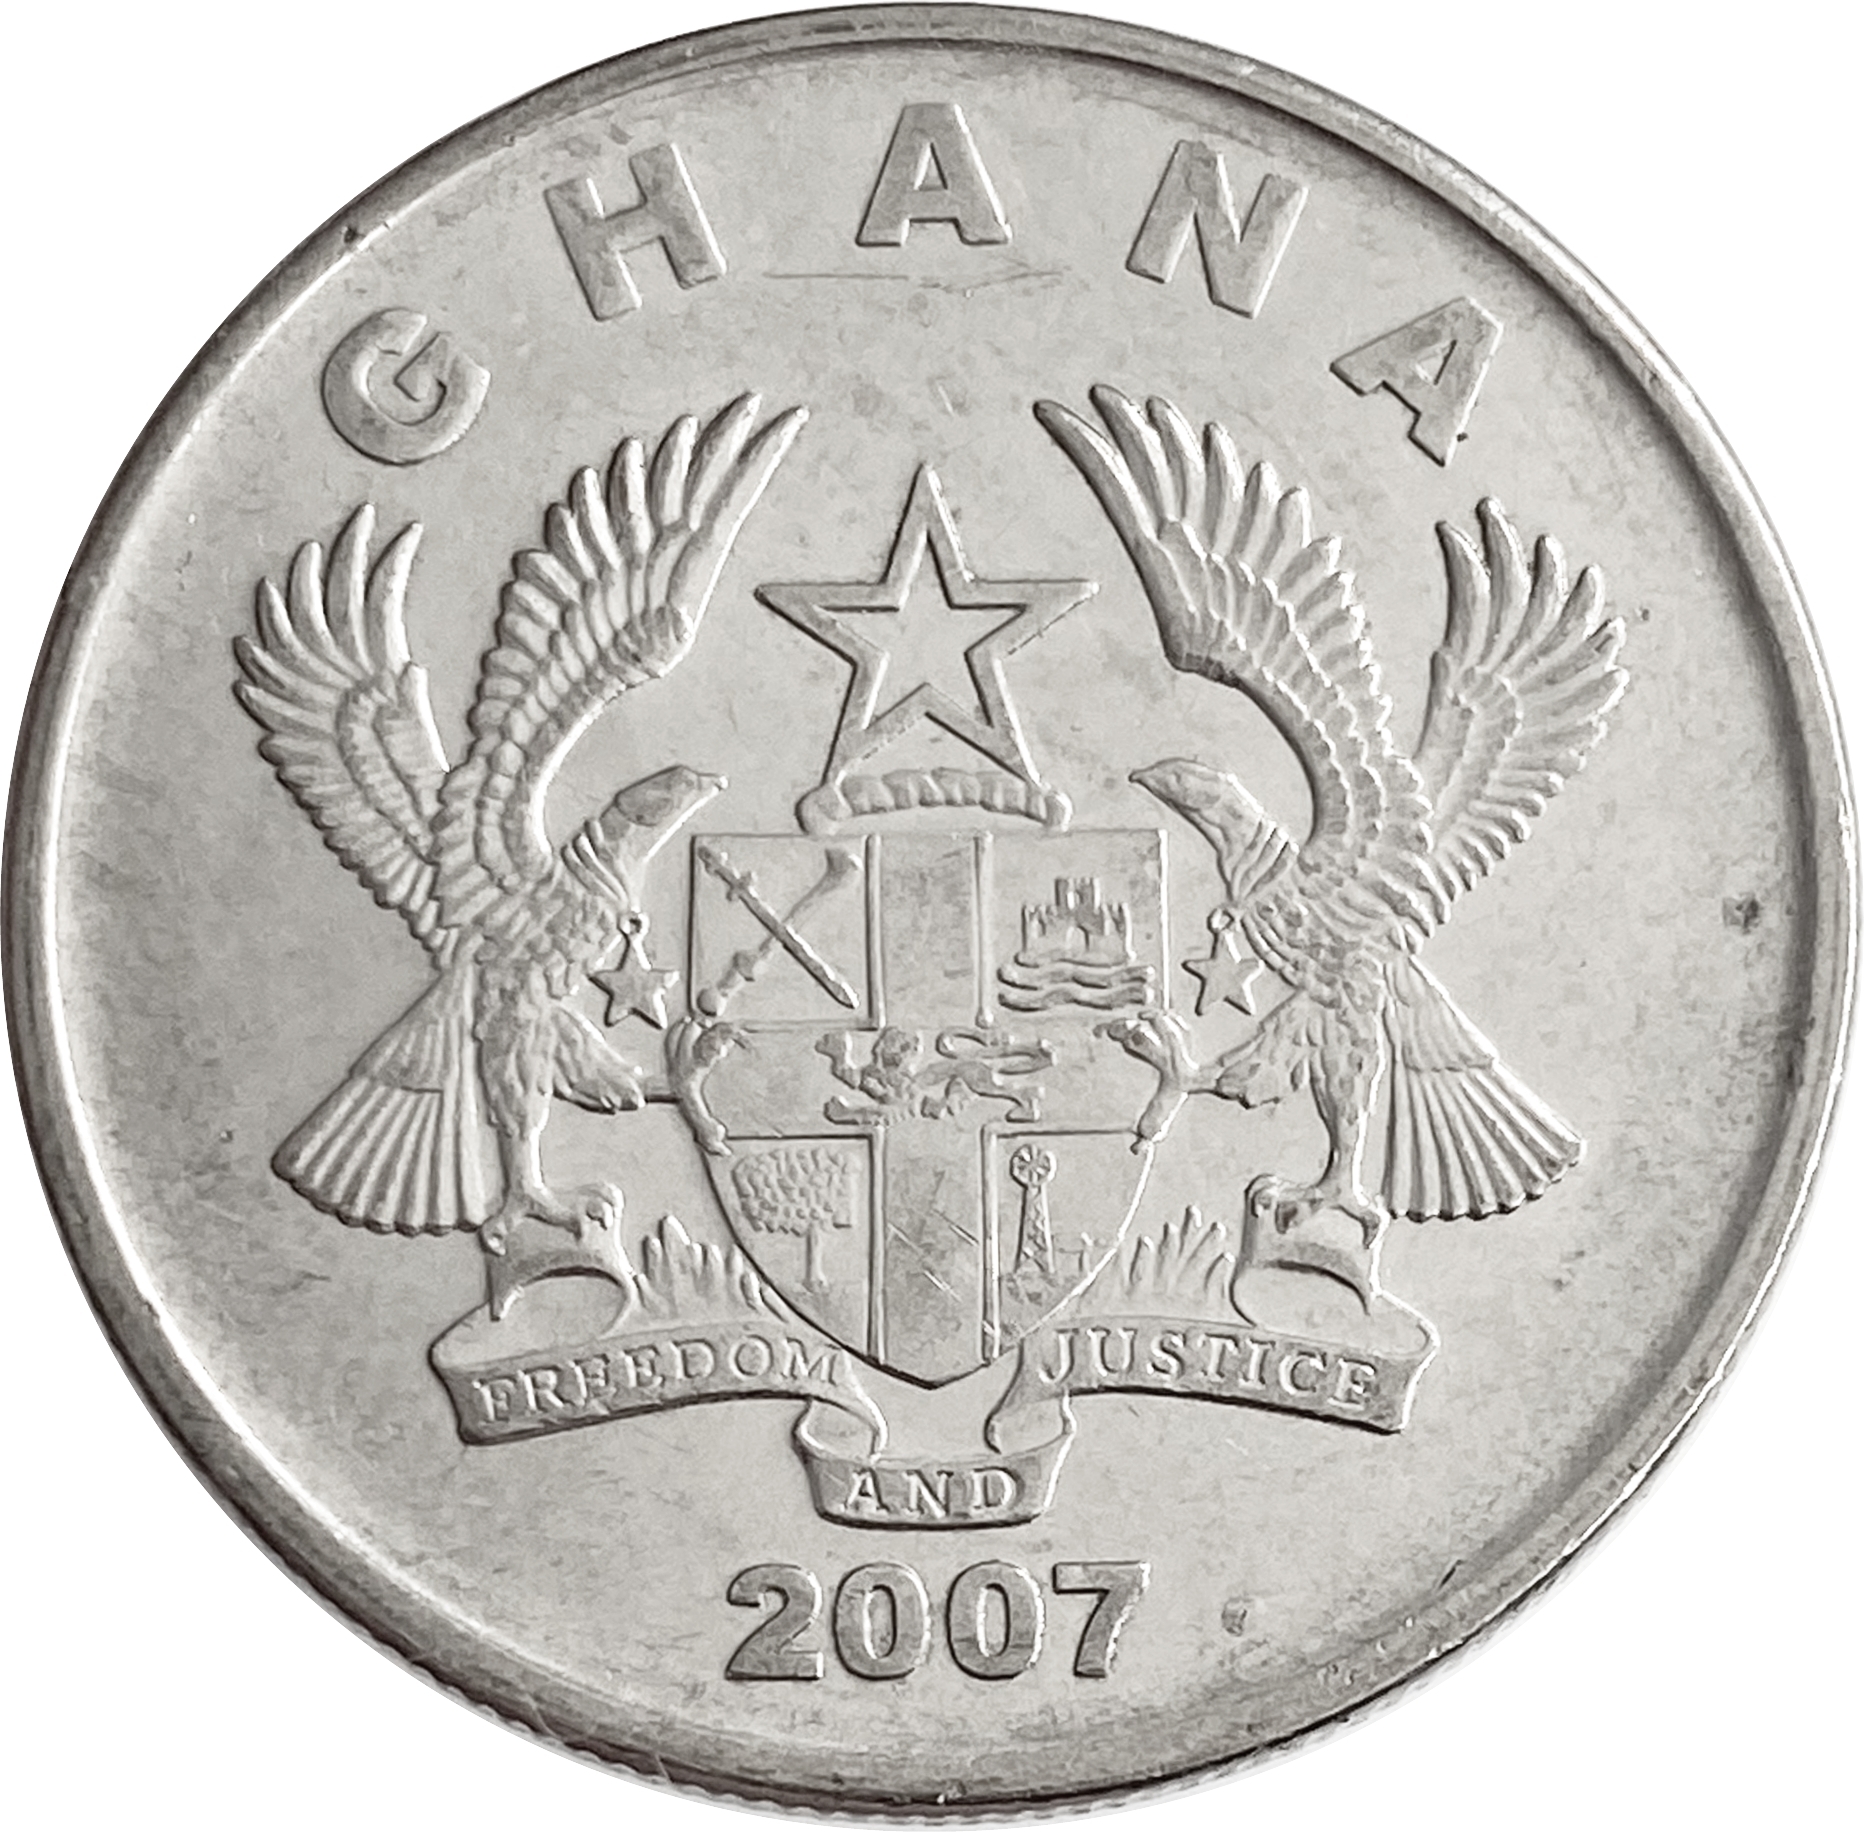 Купить монеты гана. Монеты Ганы 2007 года.